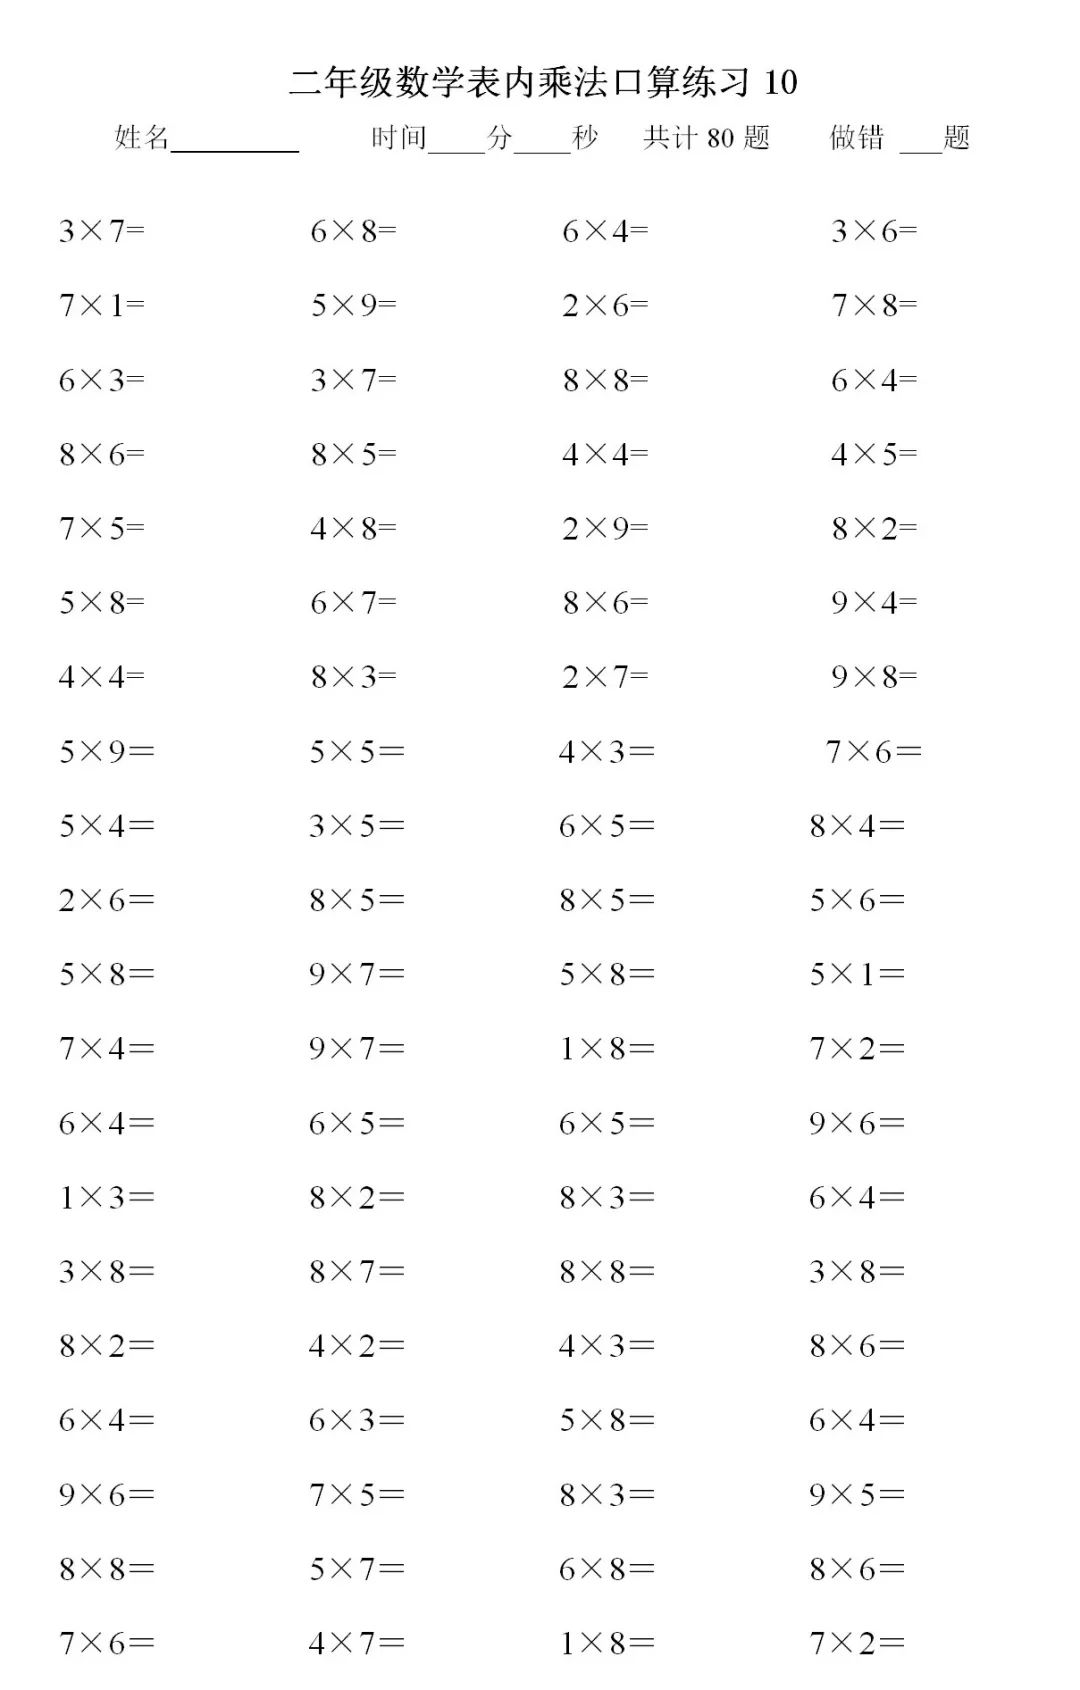 巧记二年级数学九九乘法口诀表,打好小学计算基础